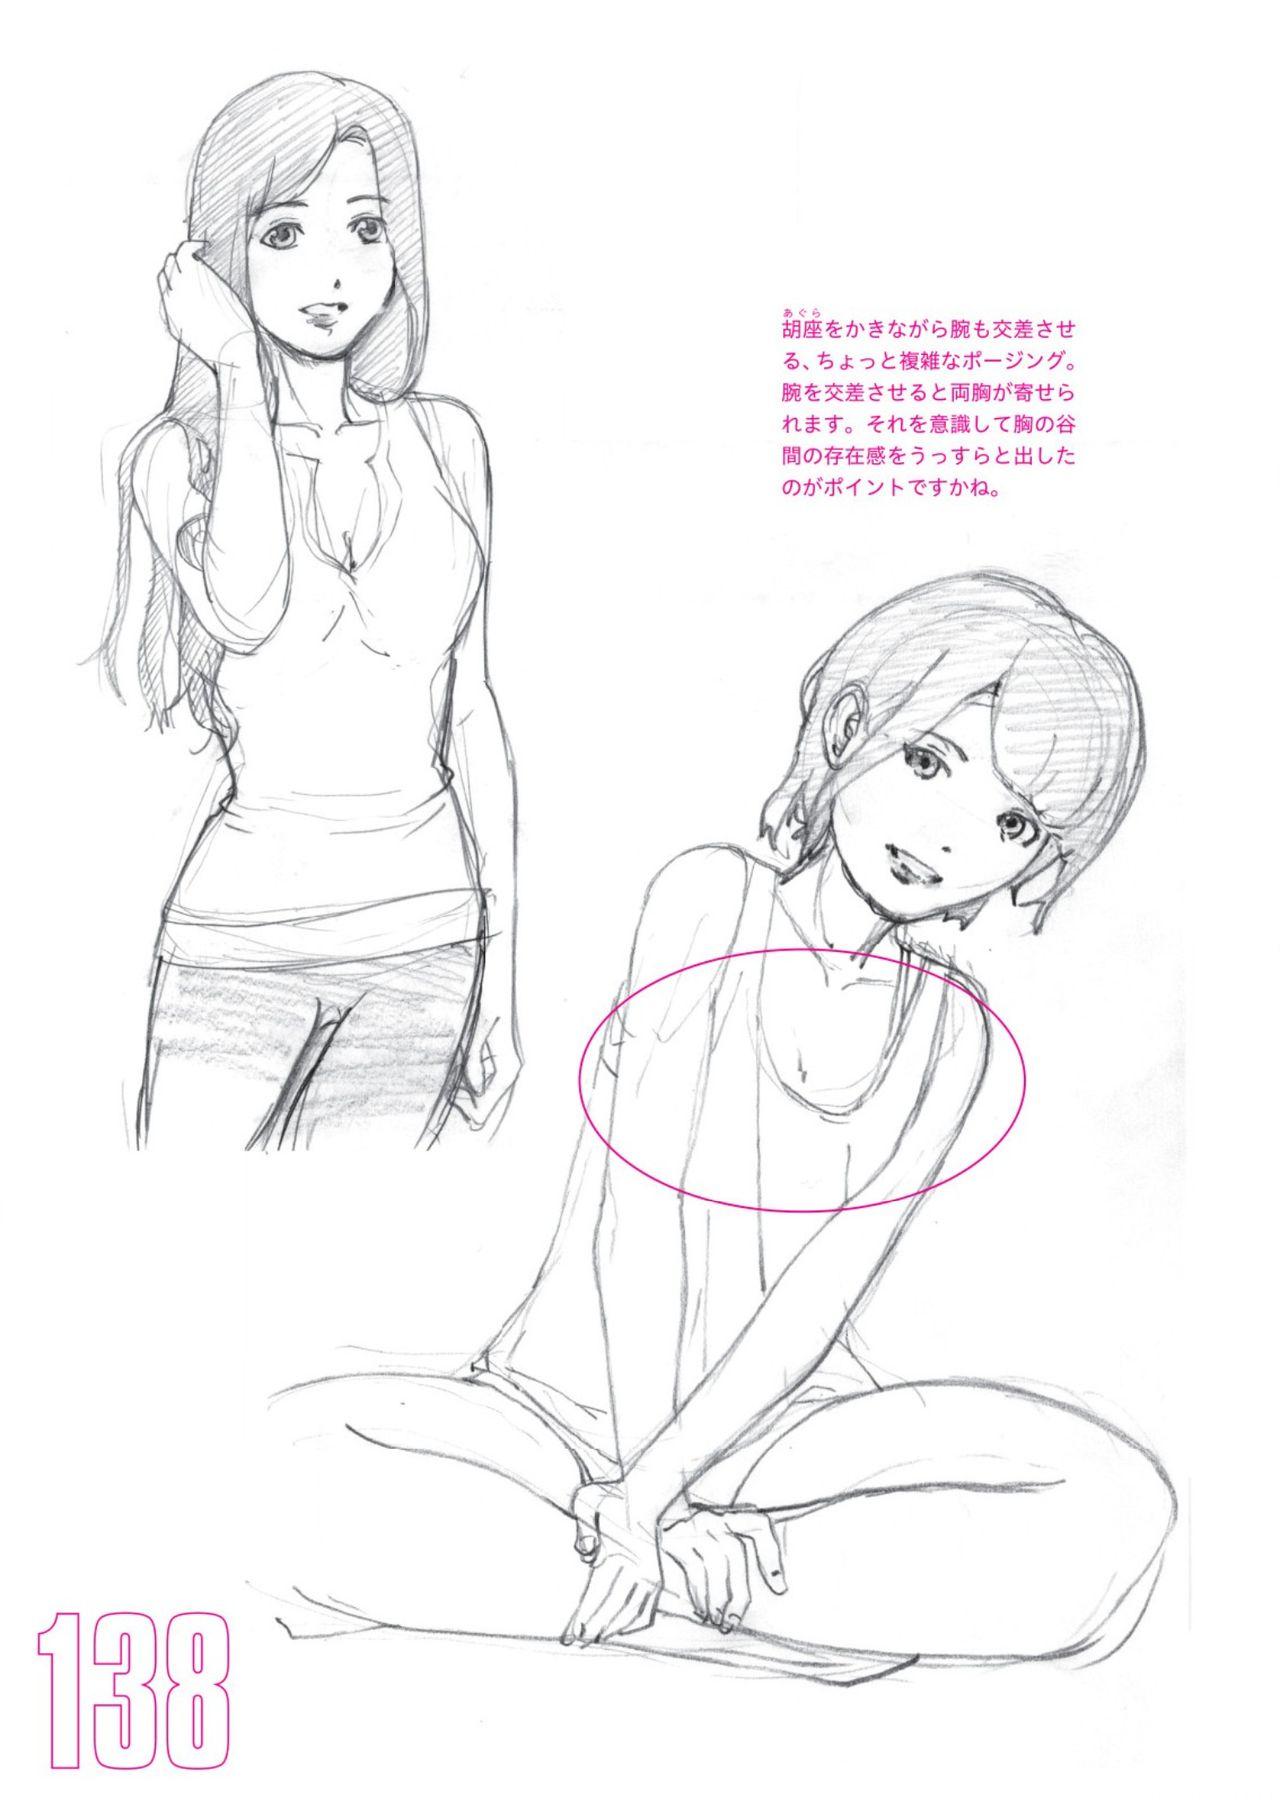 Toru Yoshida Tips for drawing women in 10 minutes 270 Uniforms 139